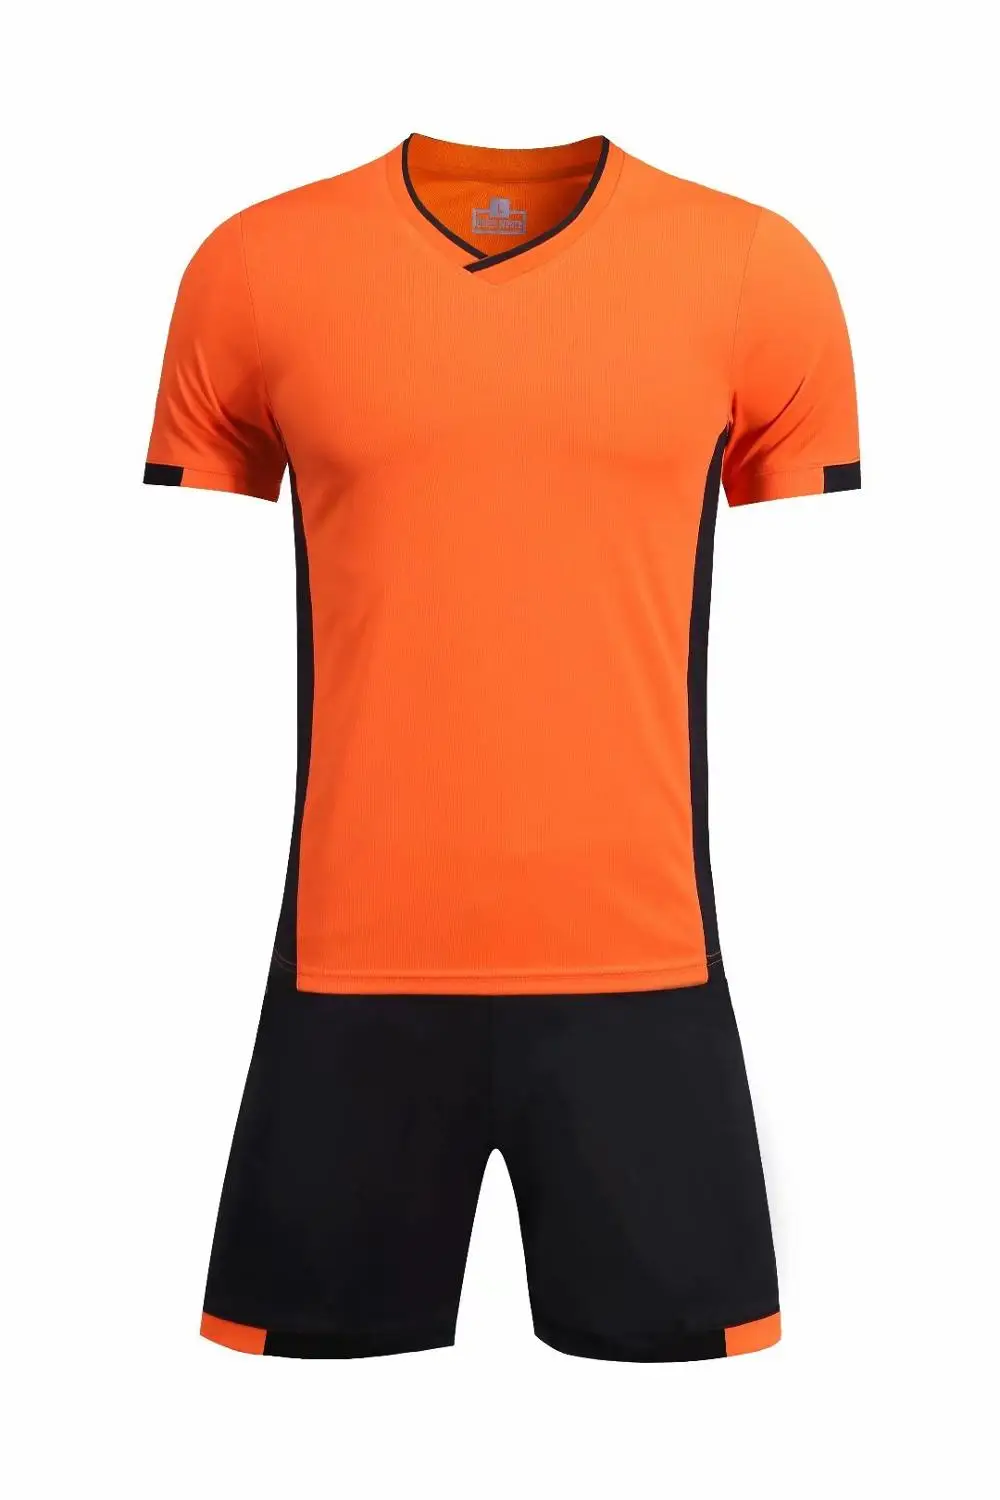 Черный Новая мужская спортивная тренировочная одежда со световыми досками с коротким рукавом футбольная форма для бега - Цвет: Оранжевый